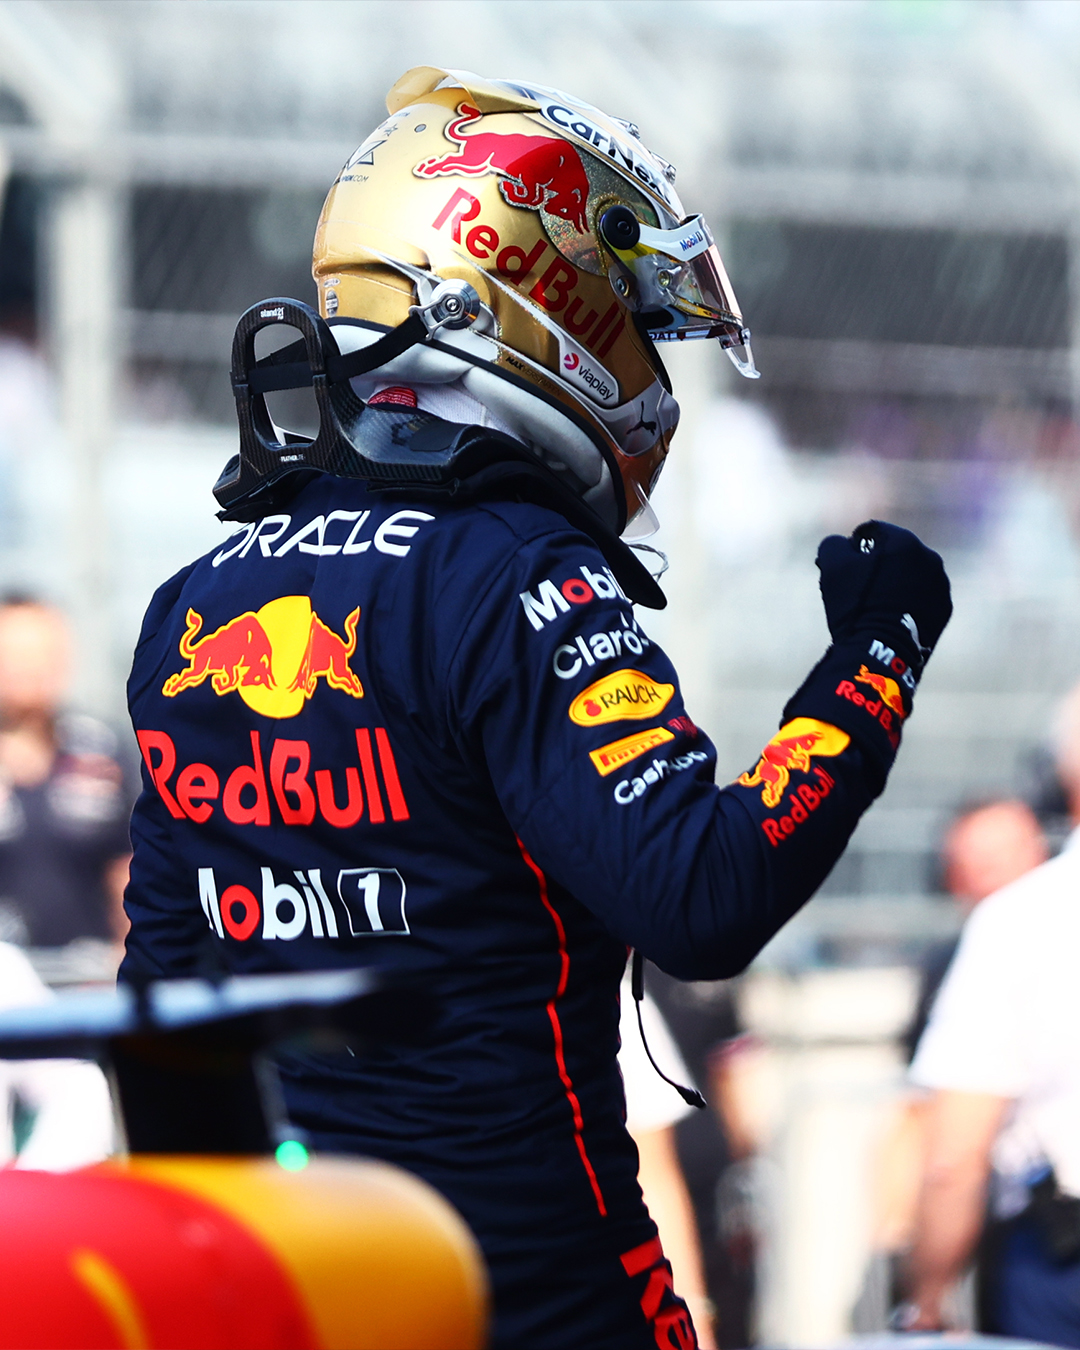 Max Verstappen en pole position au Mexique - Crédit photo : Red Bull